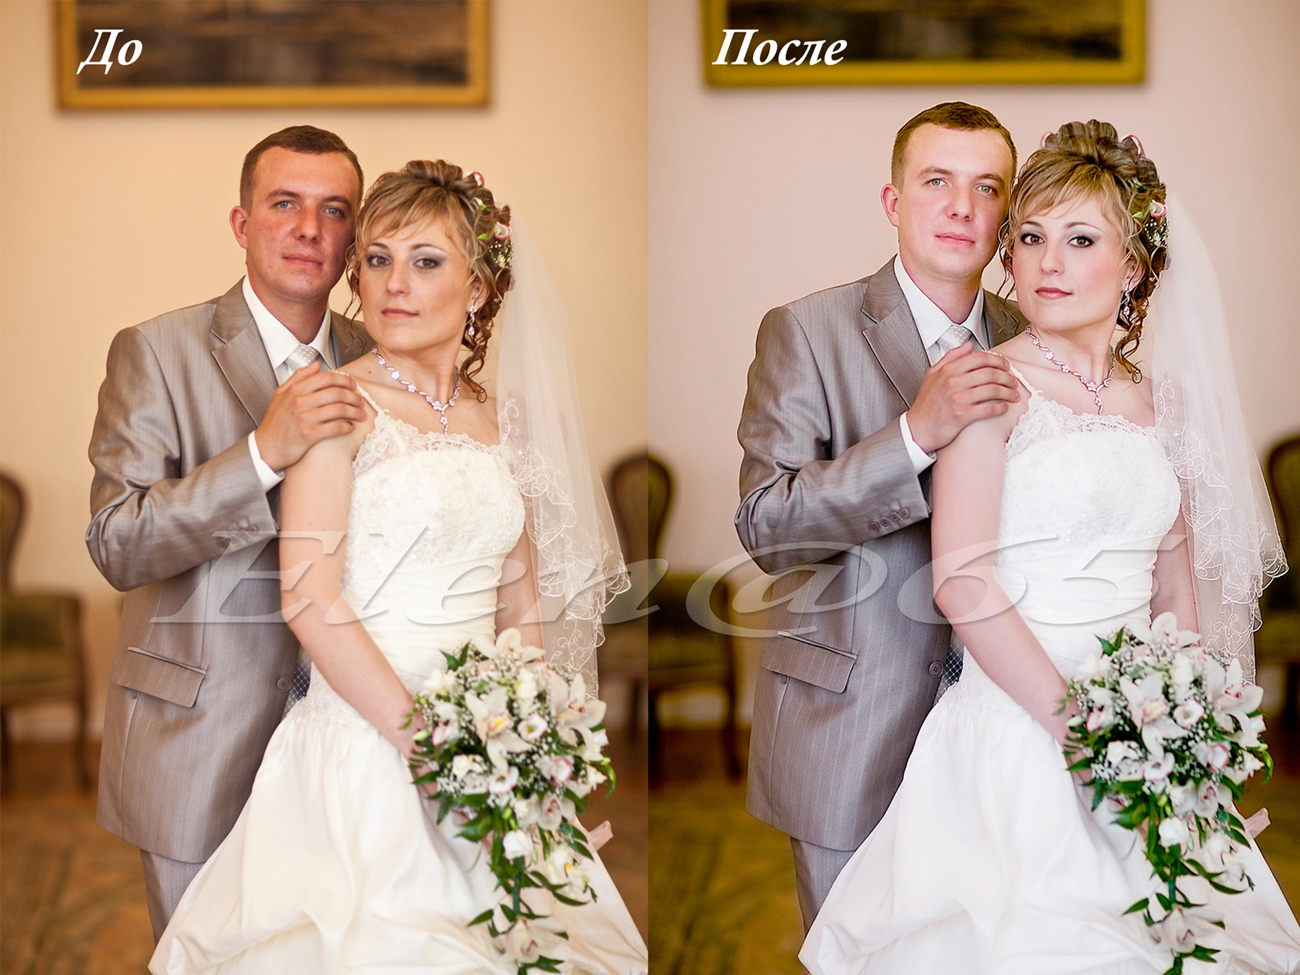 Цветокоррекция,обработка и ретушь свадебного фото.